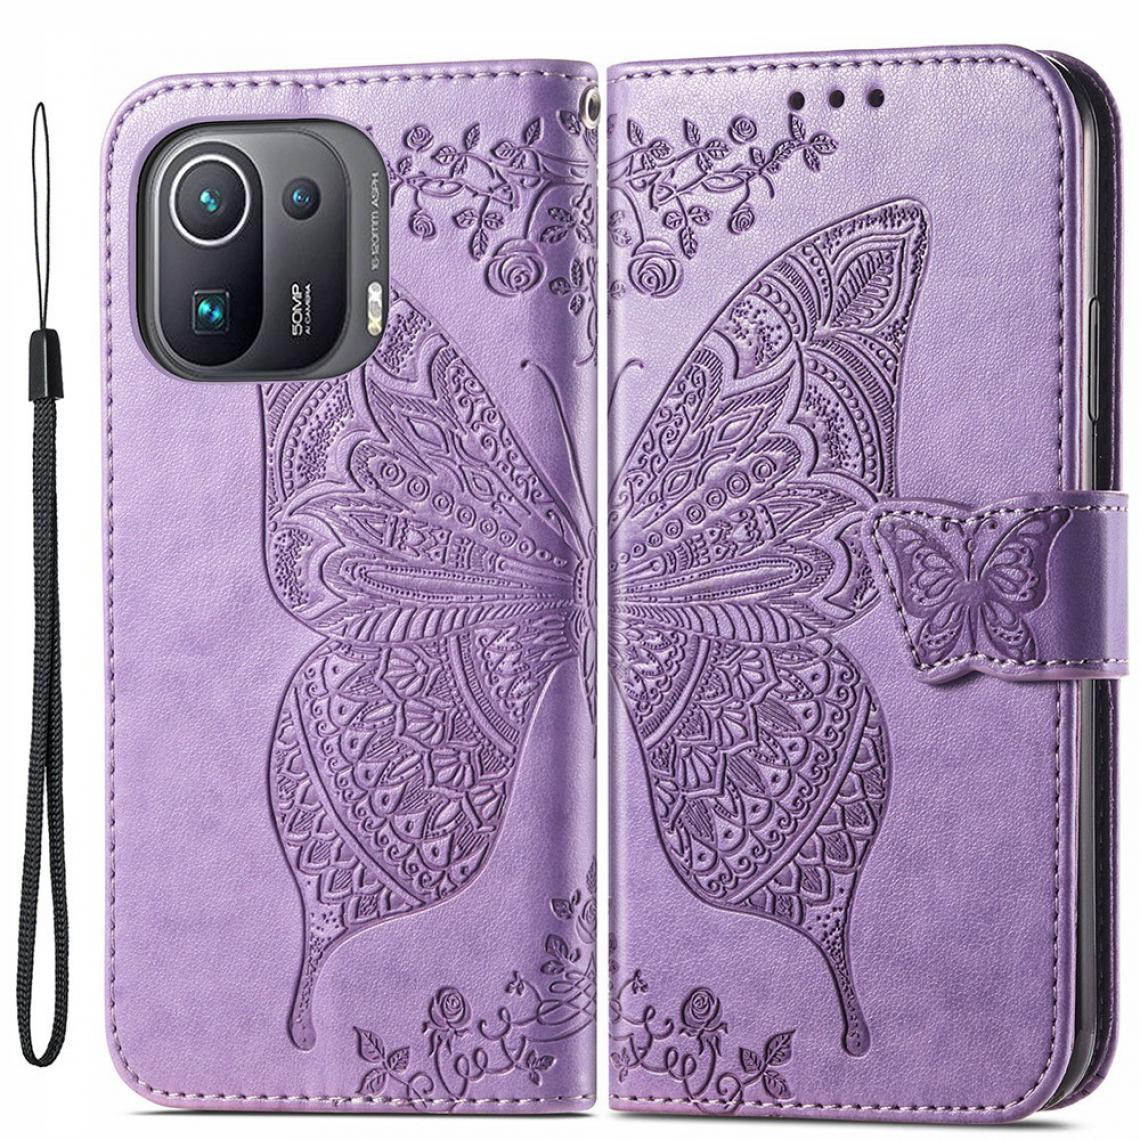 Other - Etui en PU avec impression grand papillon violet pour votre Xiaomi Mi 11 Pro - Coque, étui smartphone